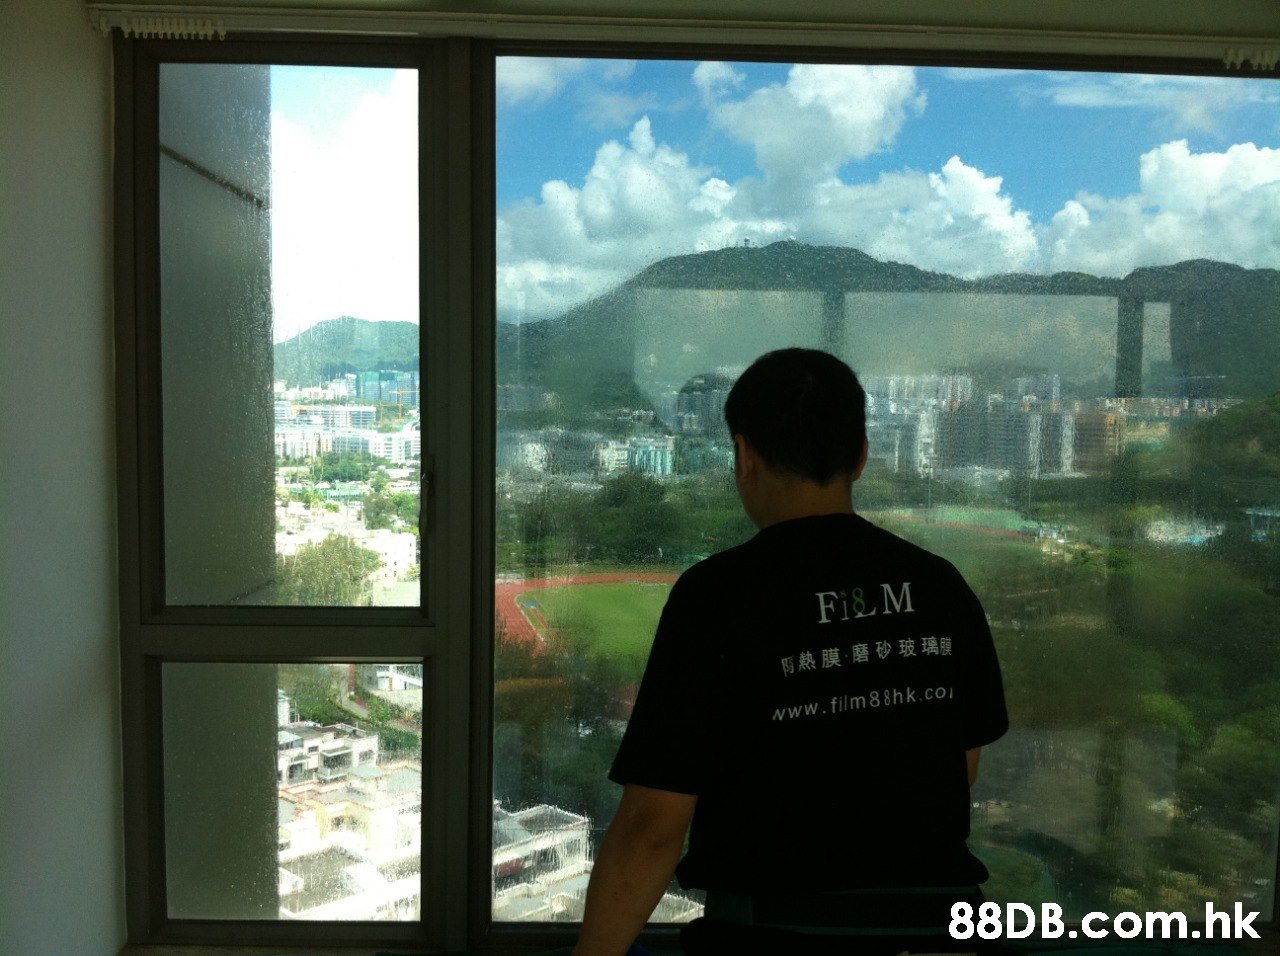 Fi& M 璃腫 阿熱膜,磨砂玻 www.film8 8hk.co .hk  Window,Window film,